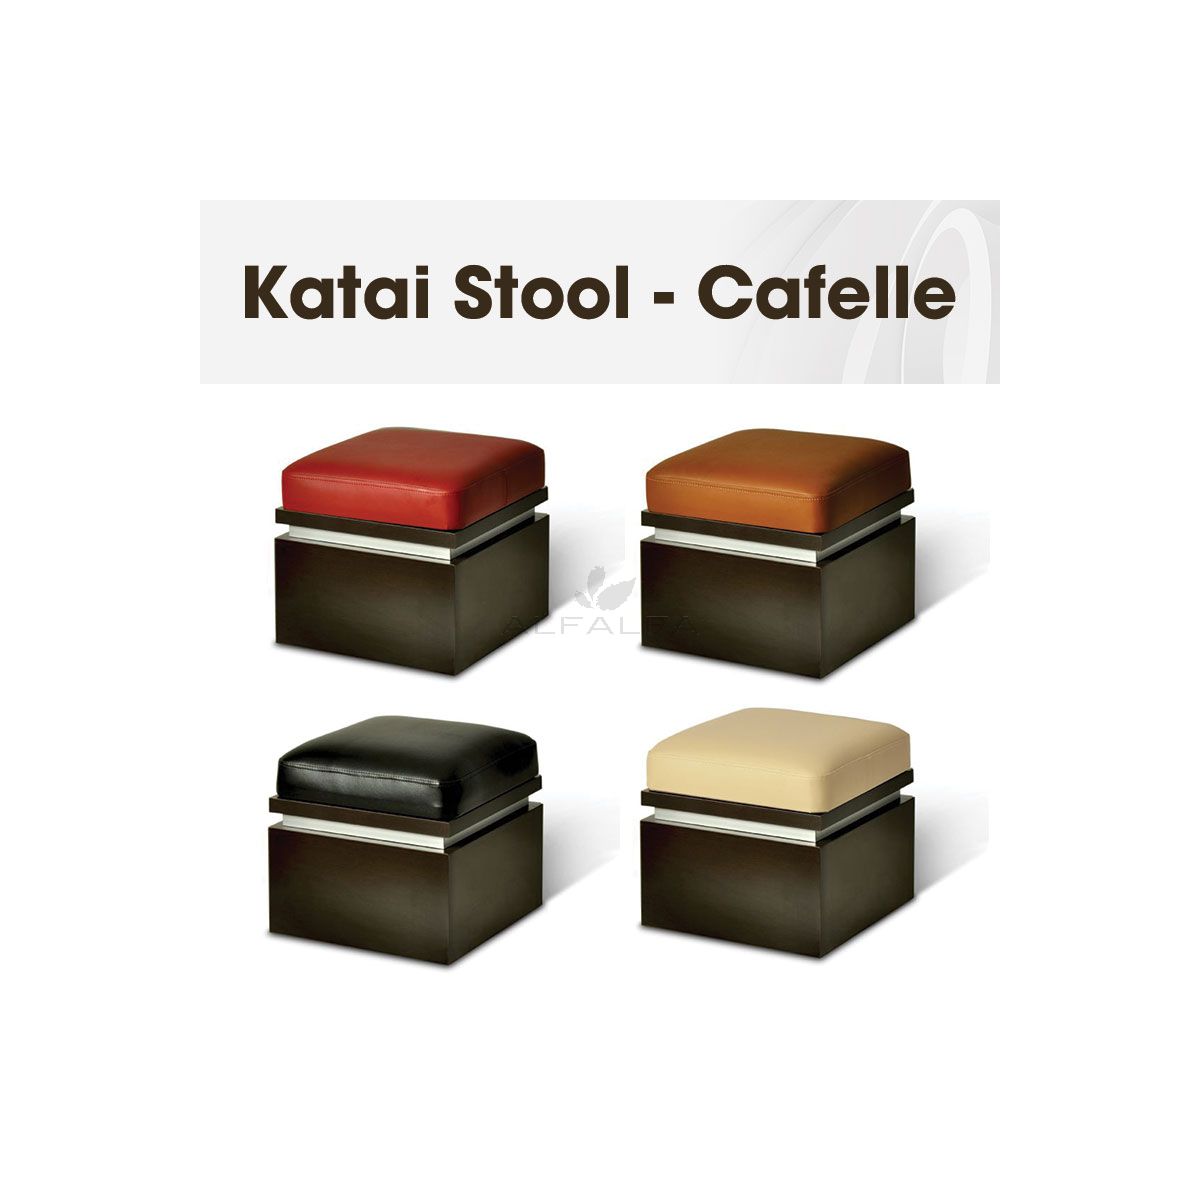 Katai Stool - Cafelle